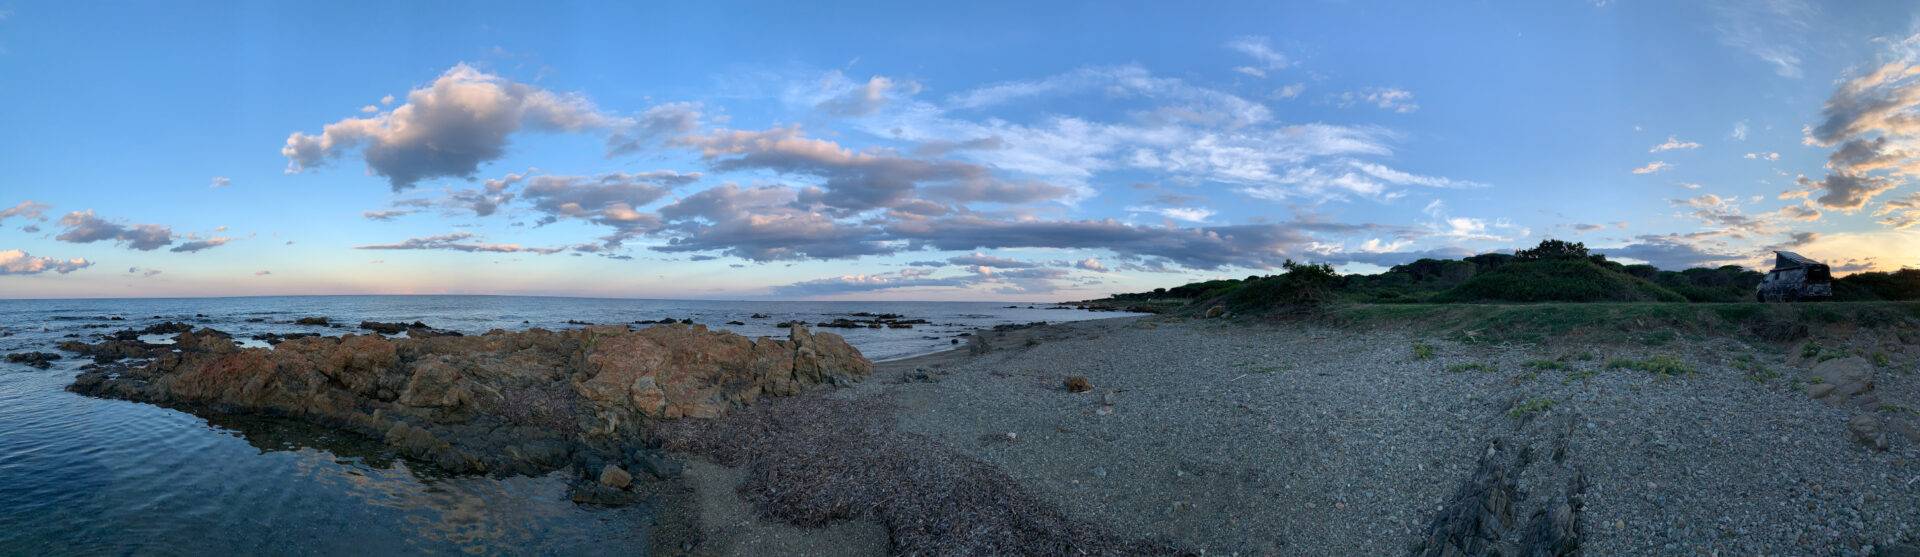 Abendstimmung am Strand nördlich von Baia Sant' Anna, Sardinien, im Hintergrund der Camouflage planBwagen, T6.1 SpaceCamper mit Delta4x4 Personenschutzbügel und Klassik_B Felge